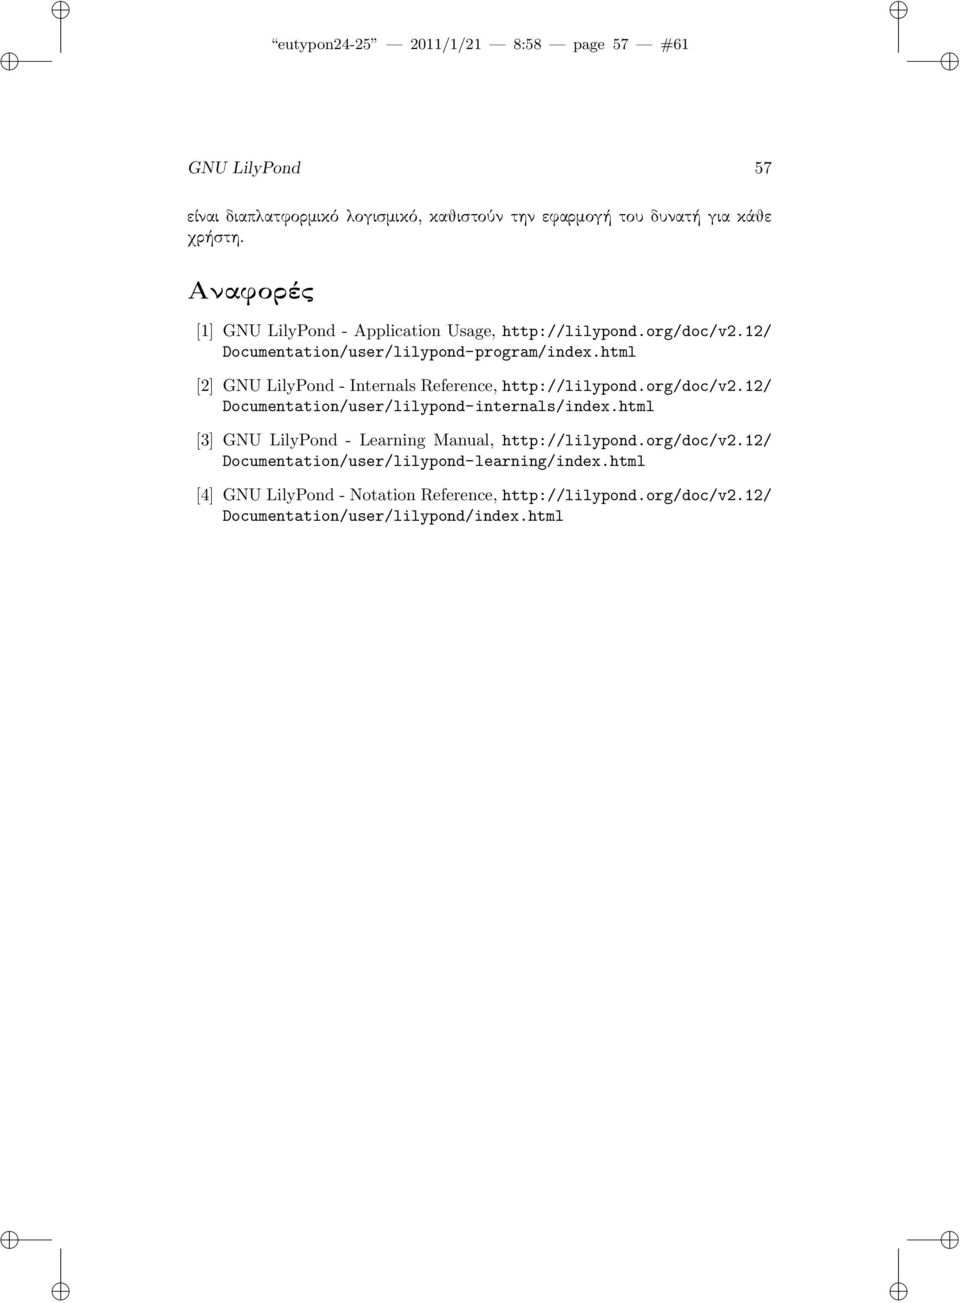 html [2] GNU LilyPond - Internals Reference, http://lilypond.org/doc/v2.12/ Documentation/user/lilypond-internals/index.